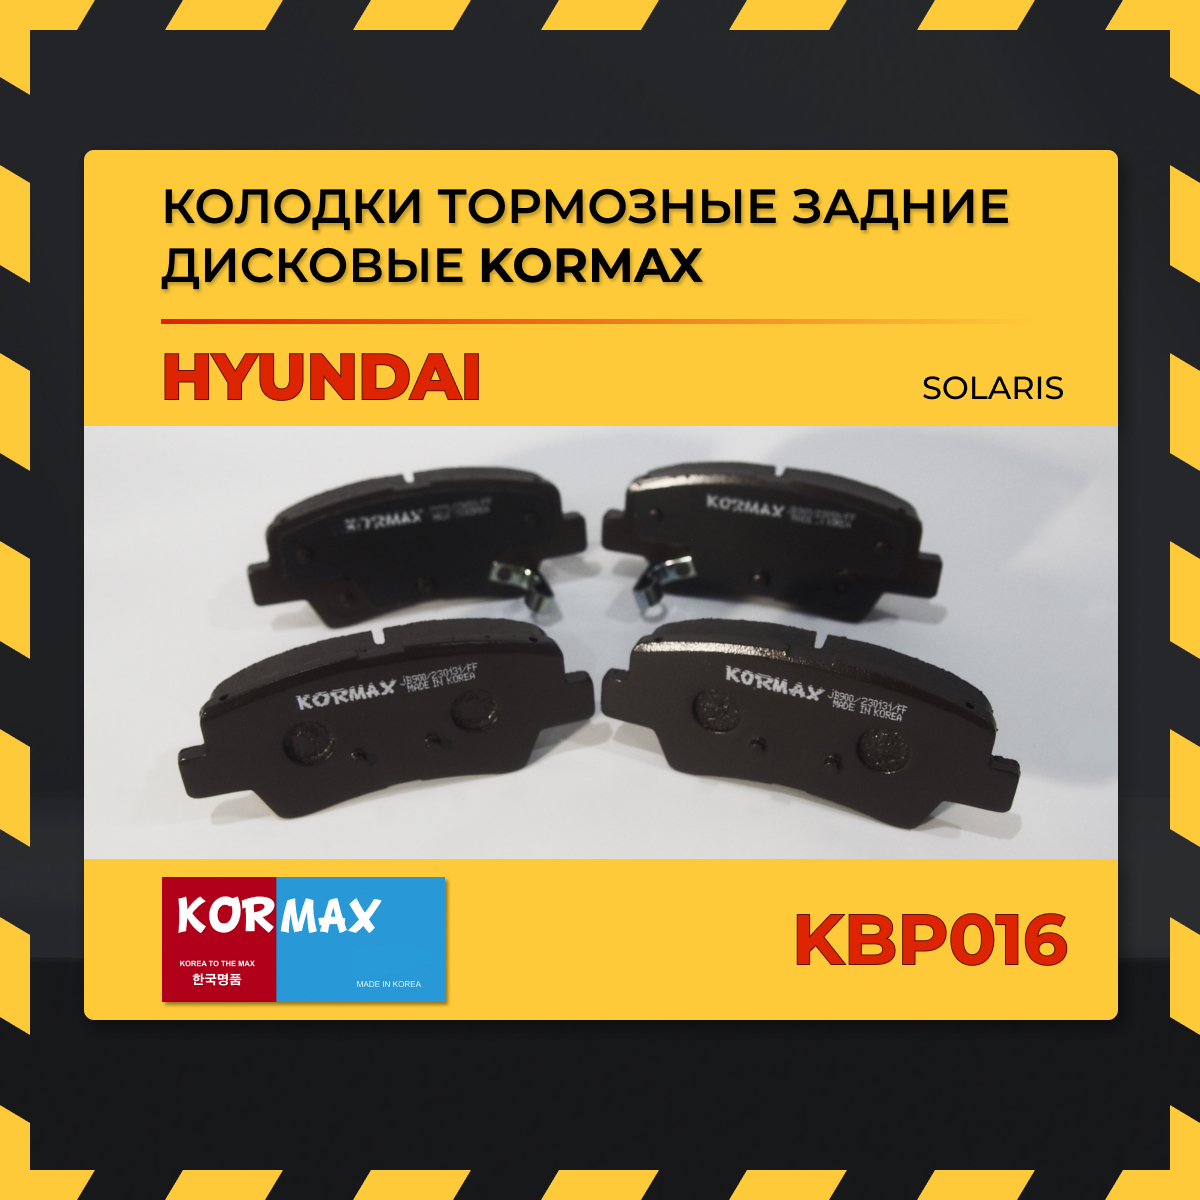 Колодки тормозные задние дисковые Kormax KBP016 для Hyundai Solaris